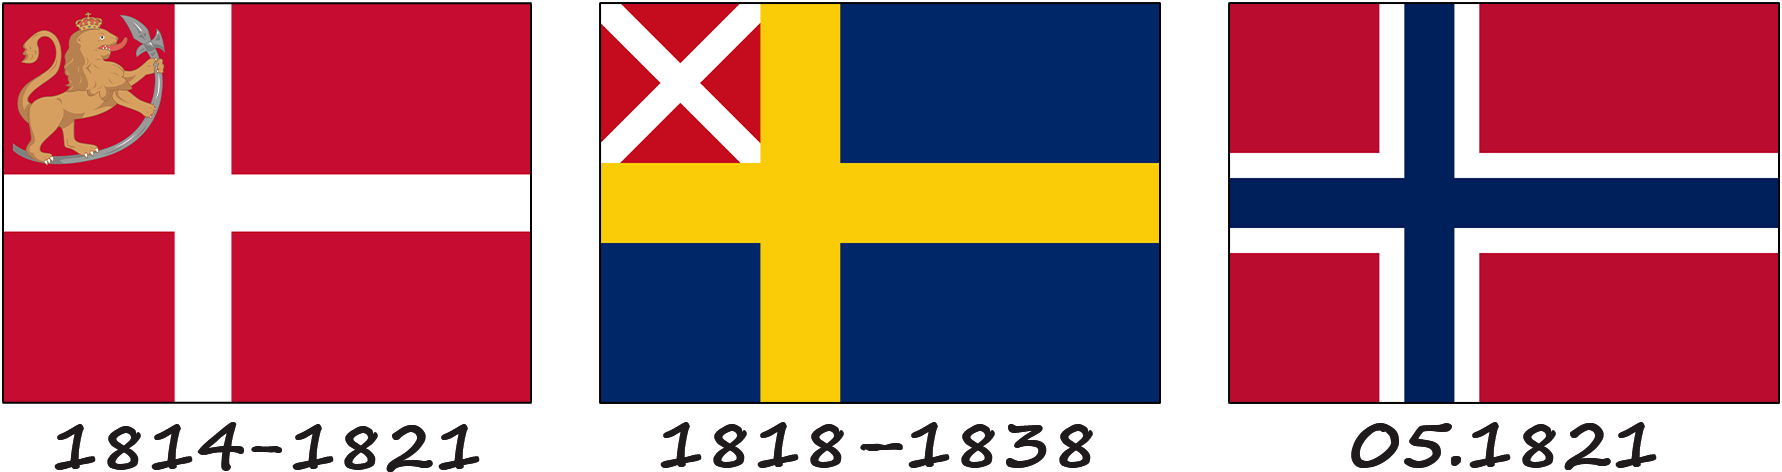 Історія створення норвезького прапора